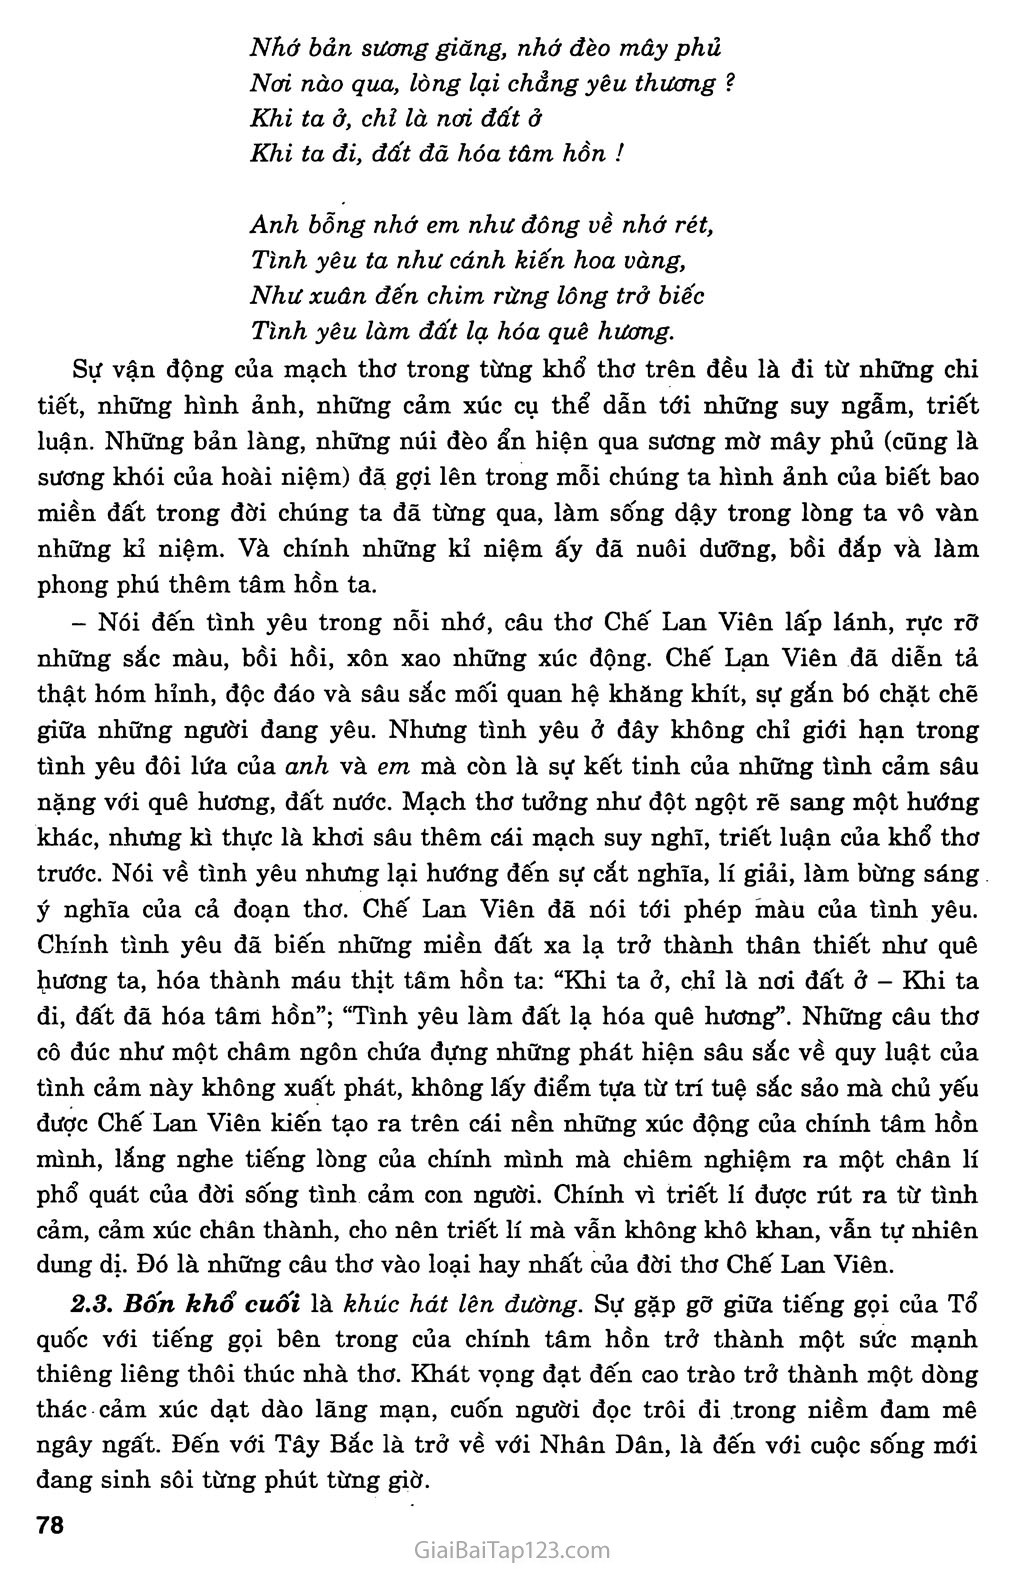 Tiếng hát con tàu (Chế Lan Viên, 1959) trang 4